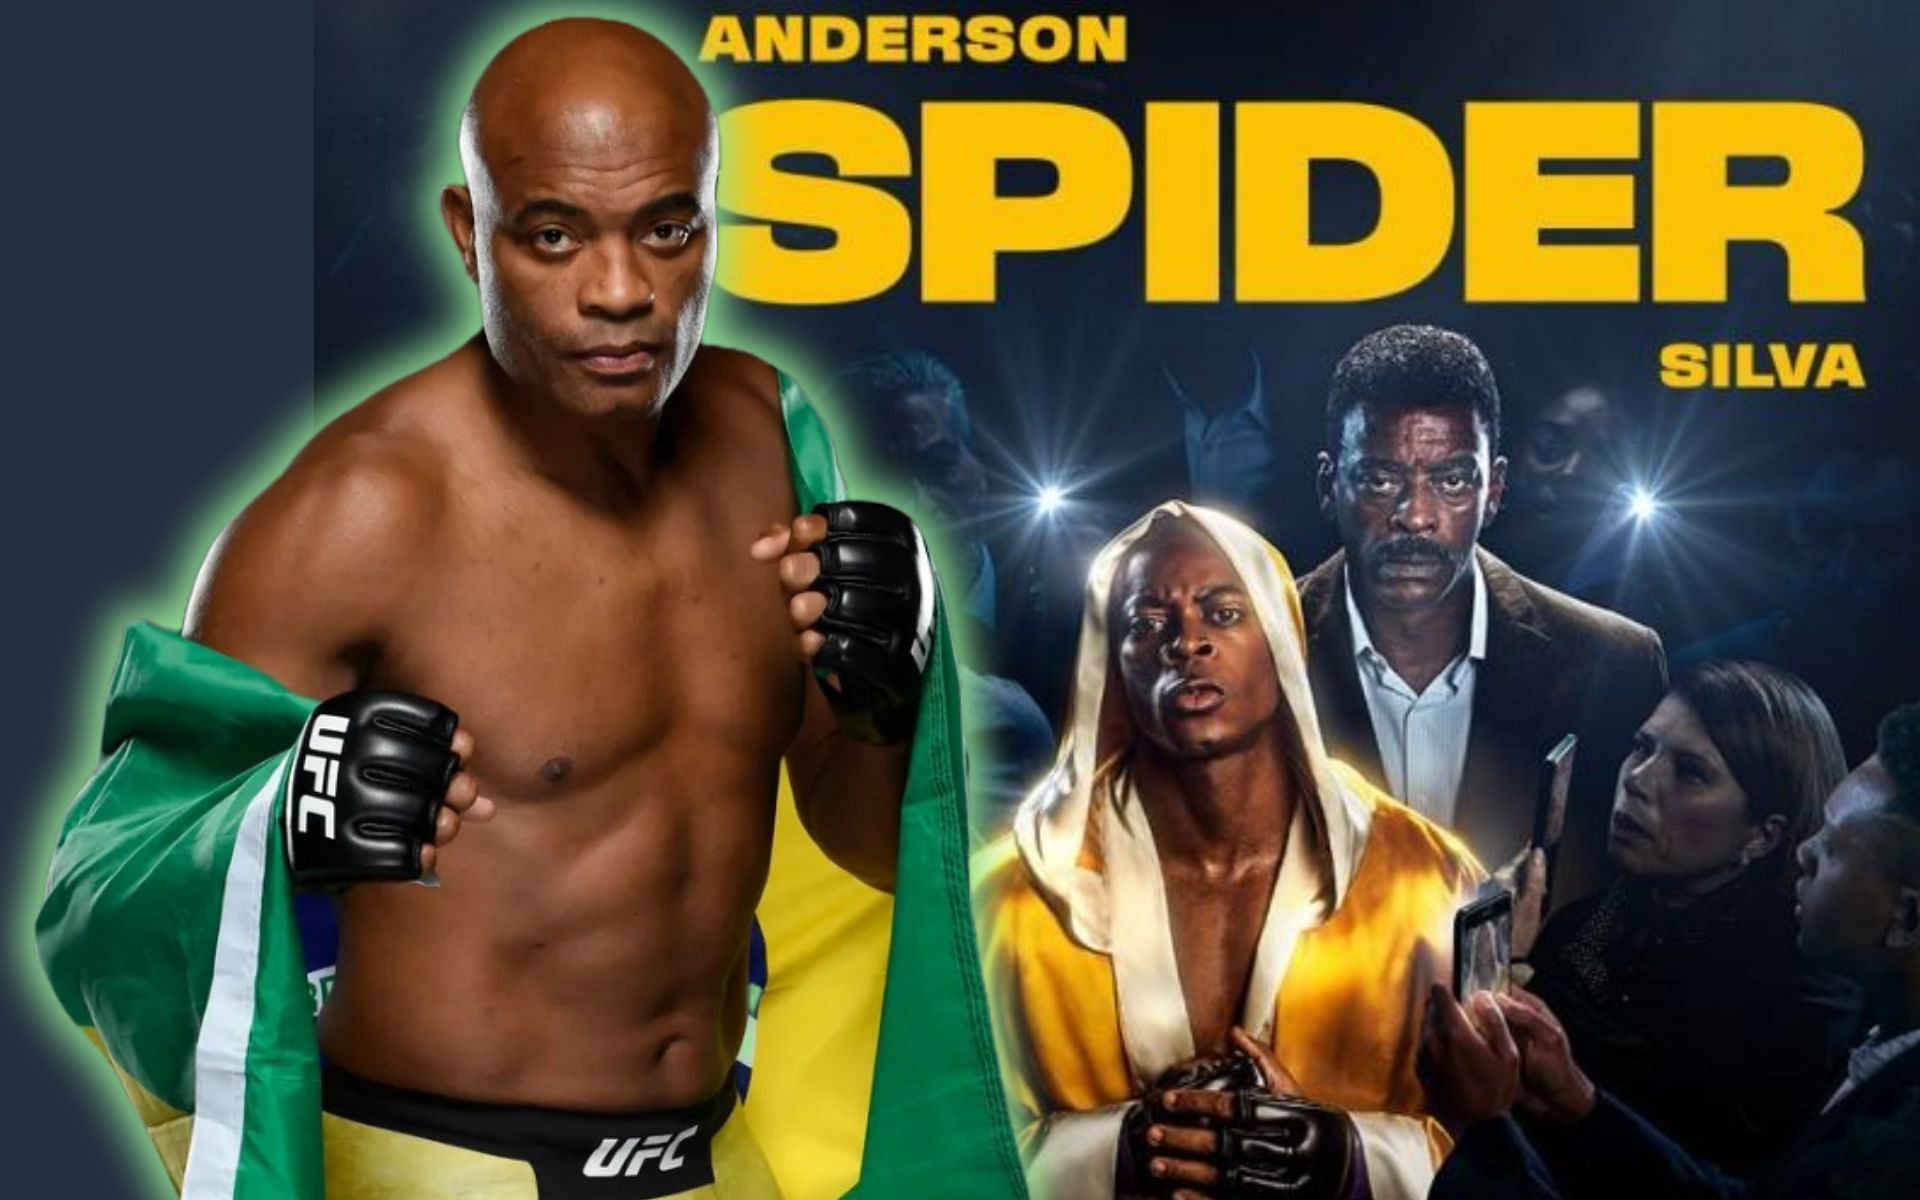 Anderson 'The Spider' Silva